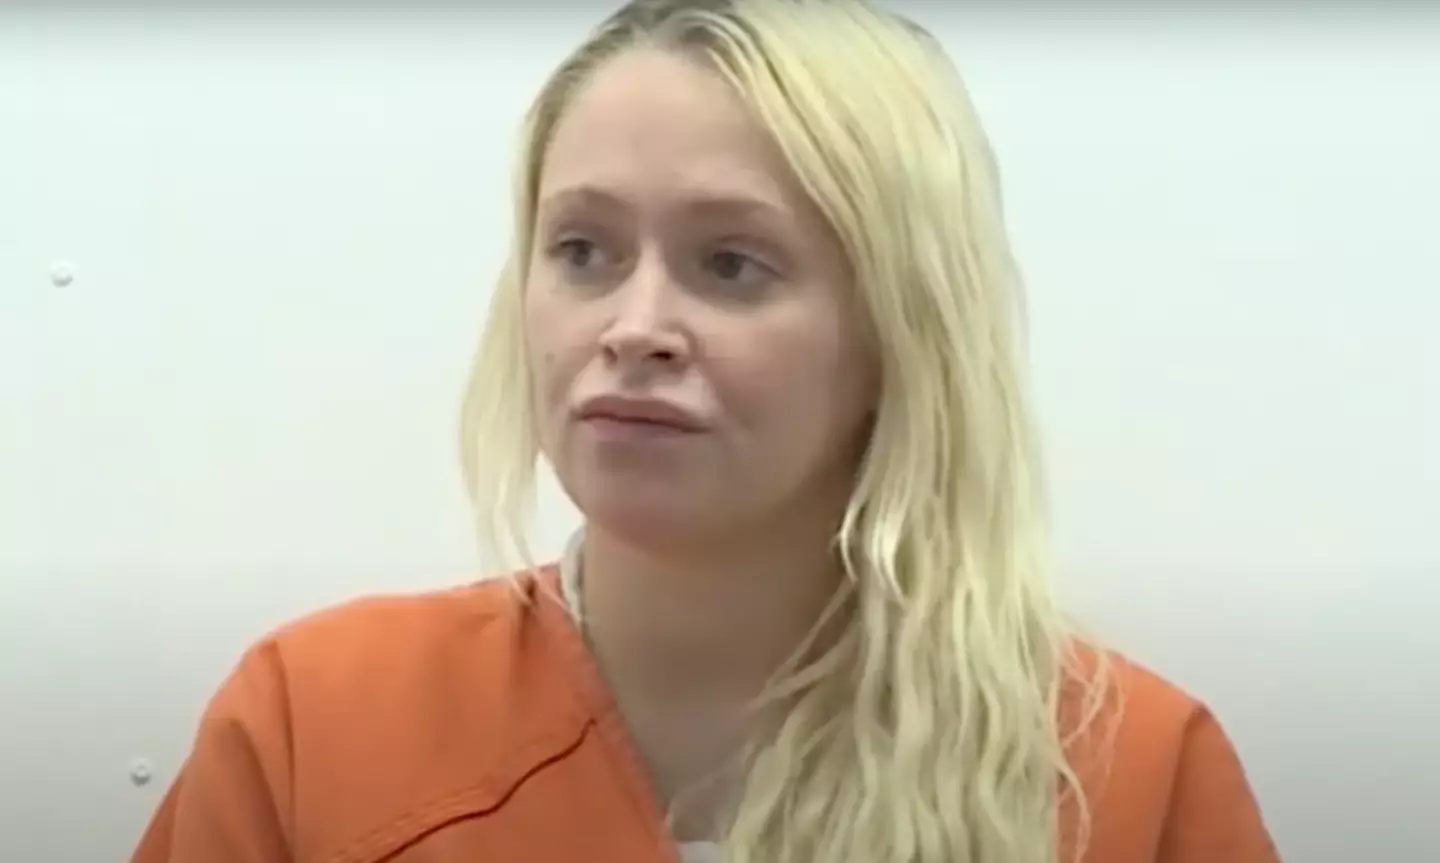 Kelsey Turner was sentenced this week.